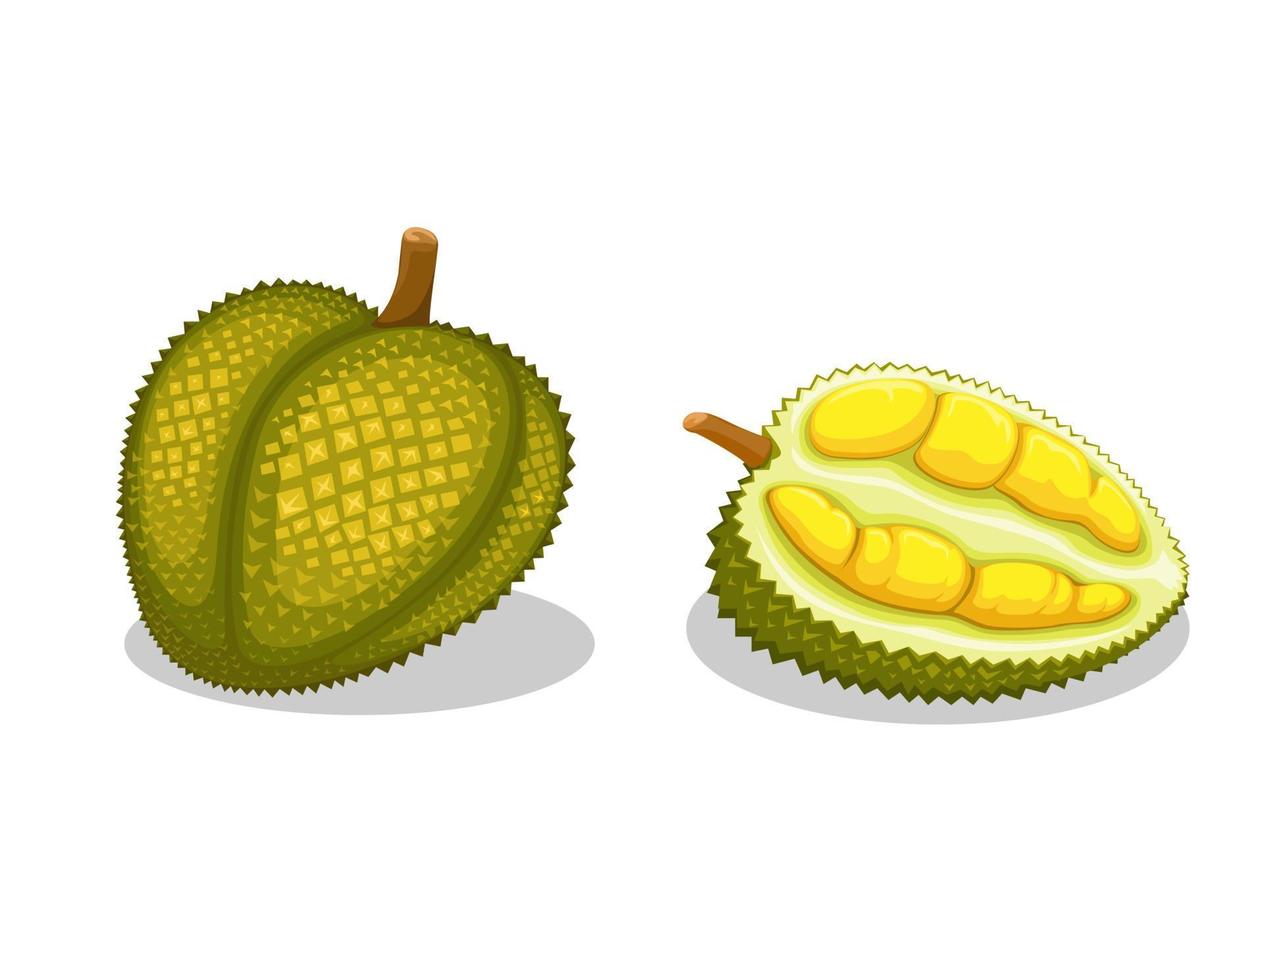 durian, também conhecido como rei da fruta, é uma fruta exótica do vetor de ilustração de conjunto de objetos asiáticos